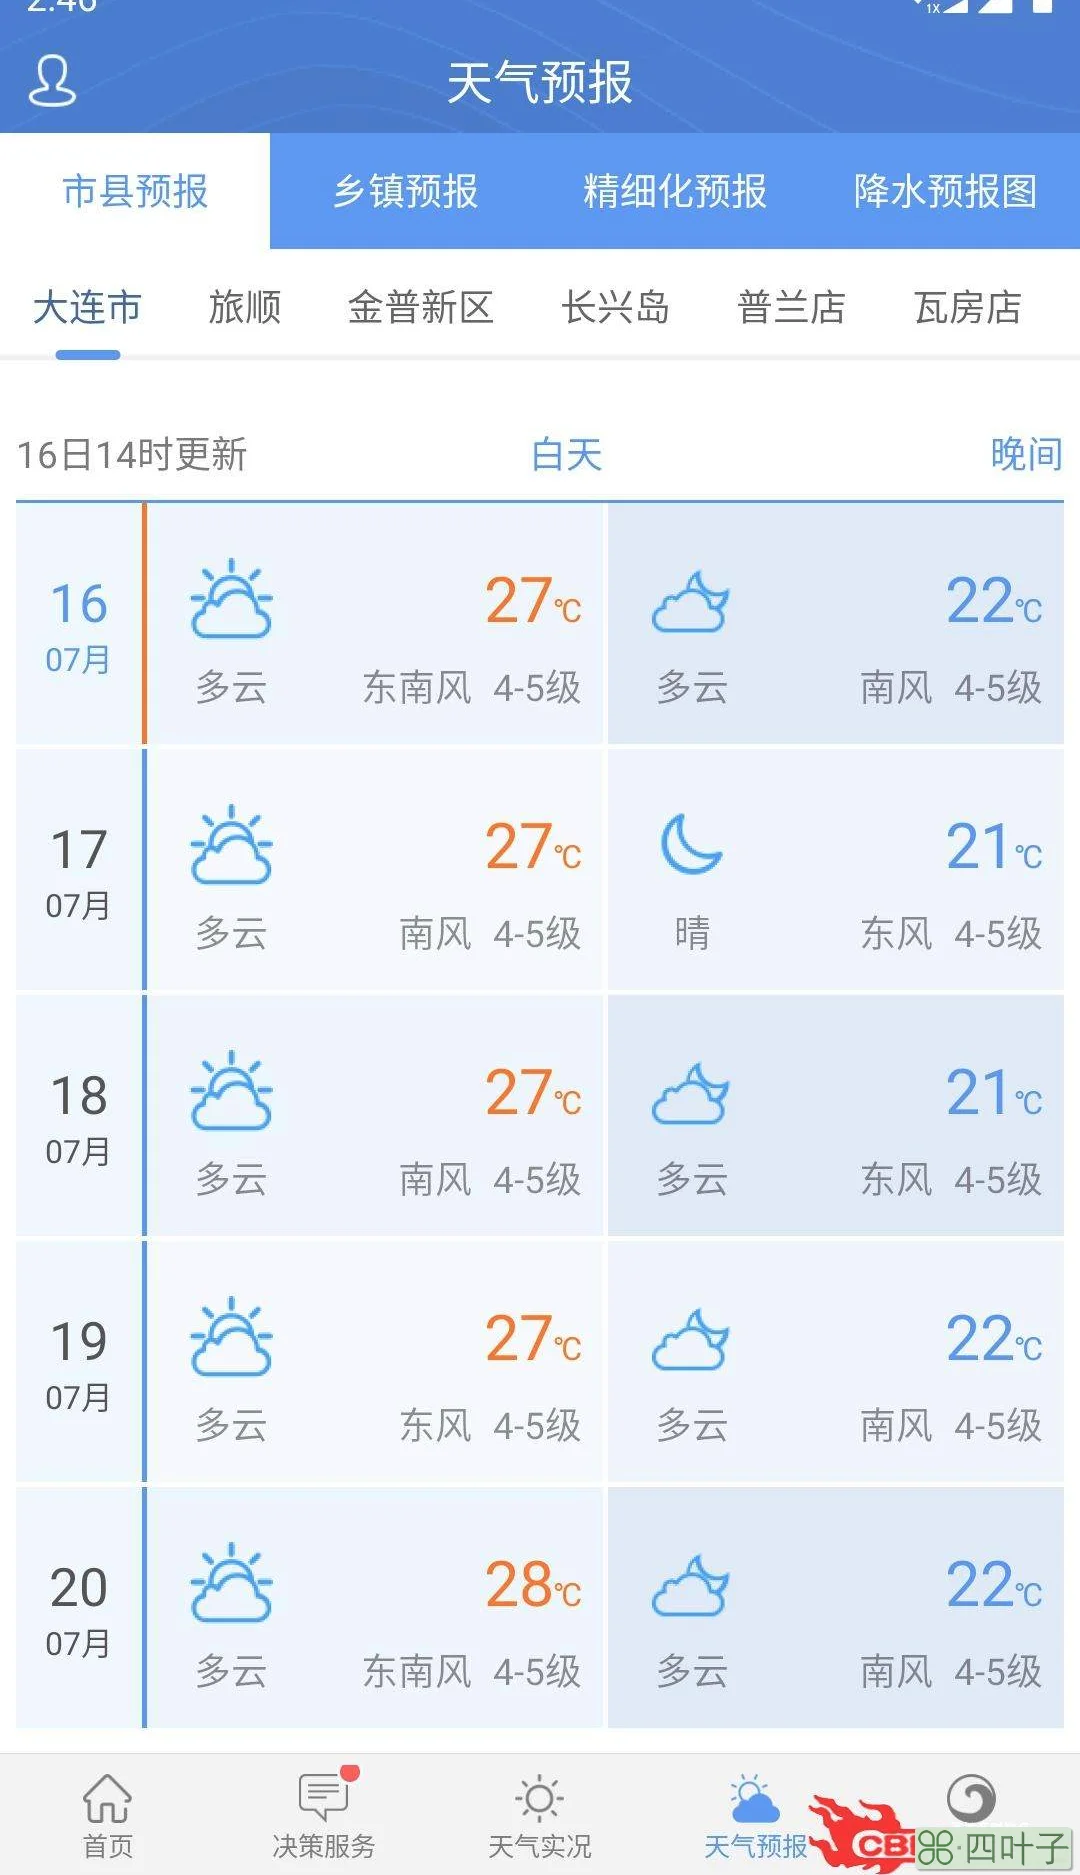 长沙市天气预报15天气象图长沙天气预报15天气预